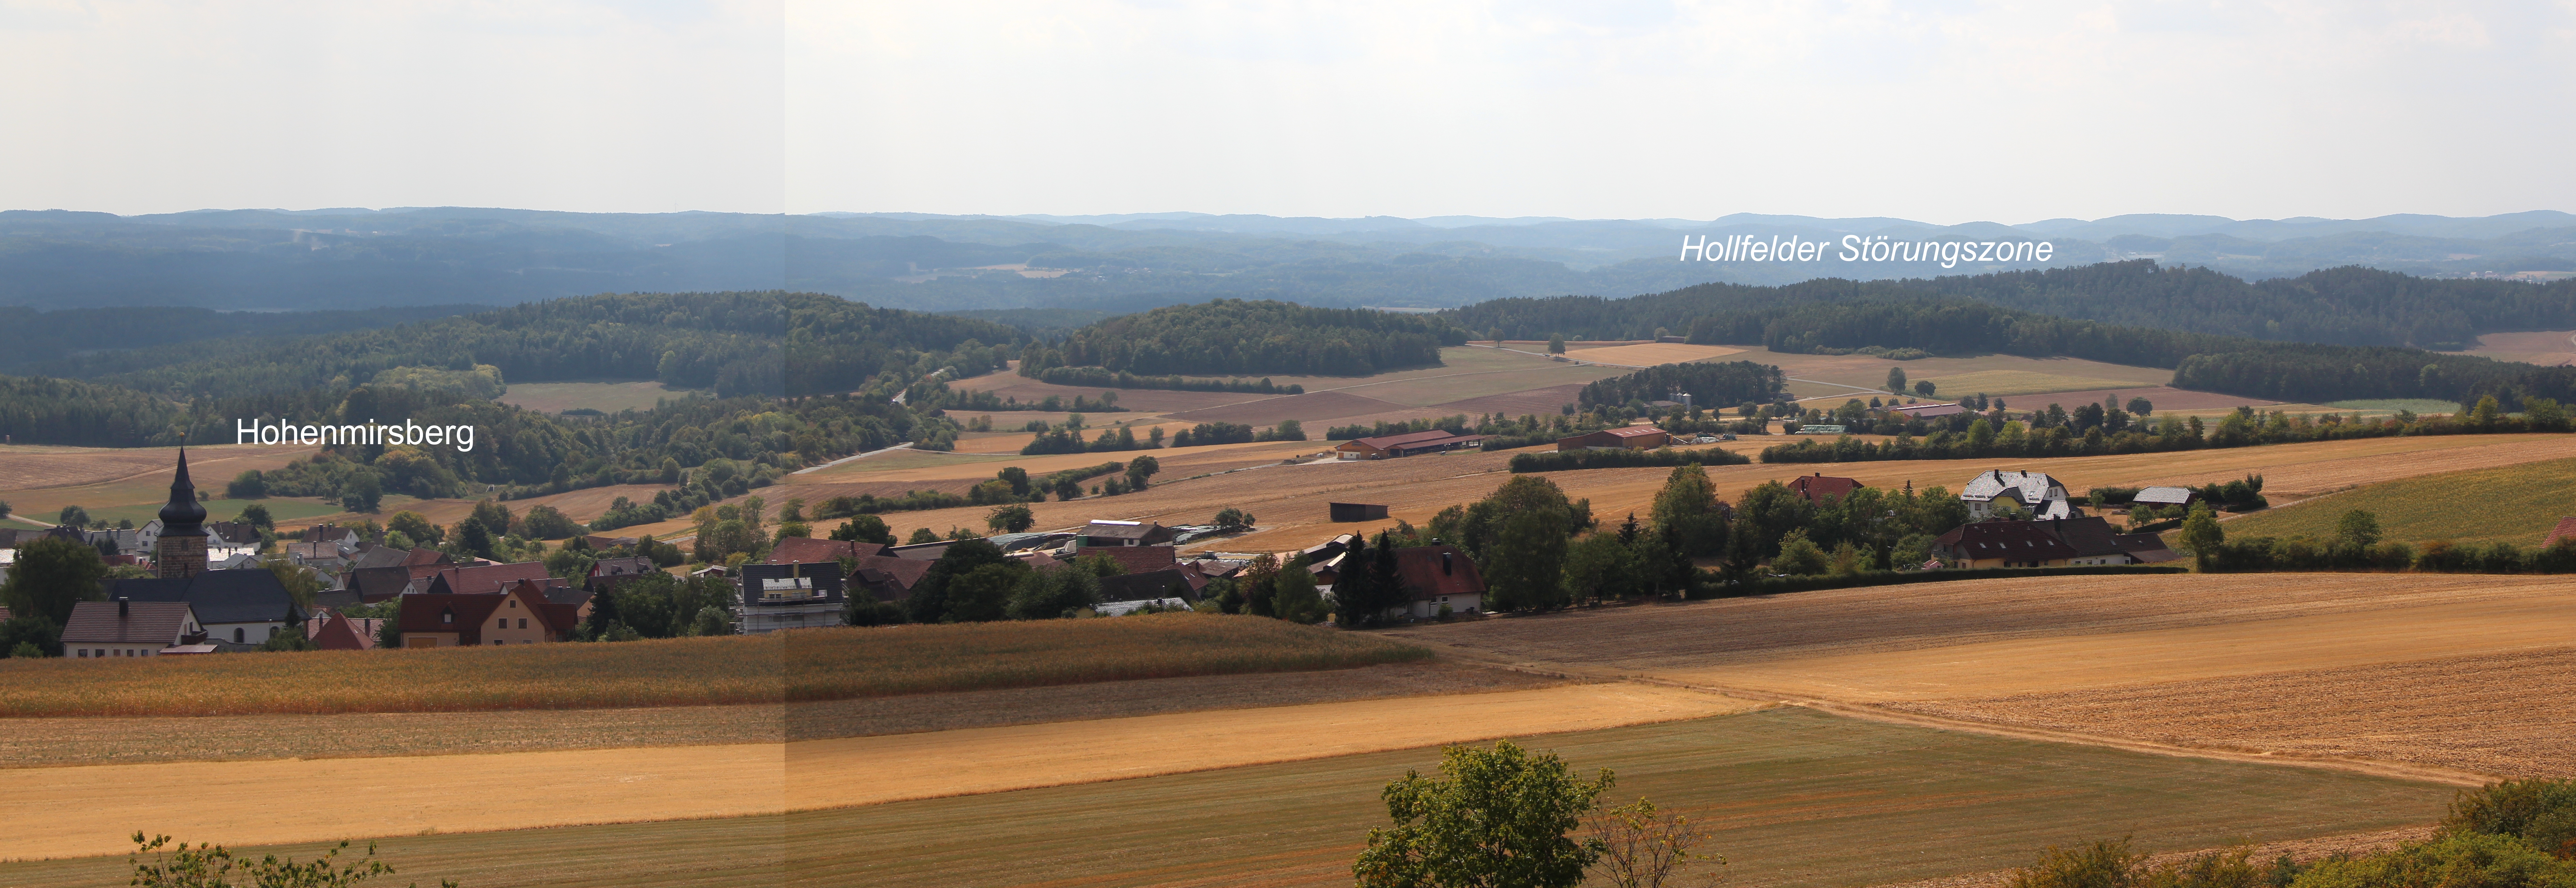 Abb. 11: Panoramafoto vom Aussichtsturm auf der Hohenmirsberger Platte in Richtung Westen mit Blick über den Ort Hohenmirsberg und die Hollfelder Störungszone